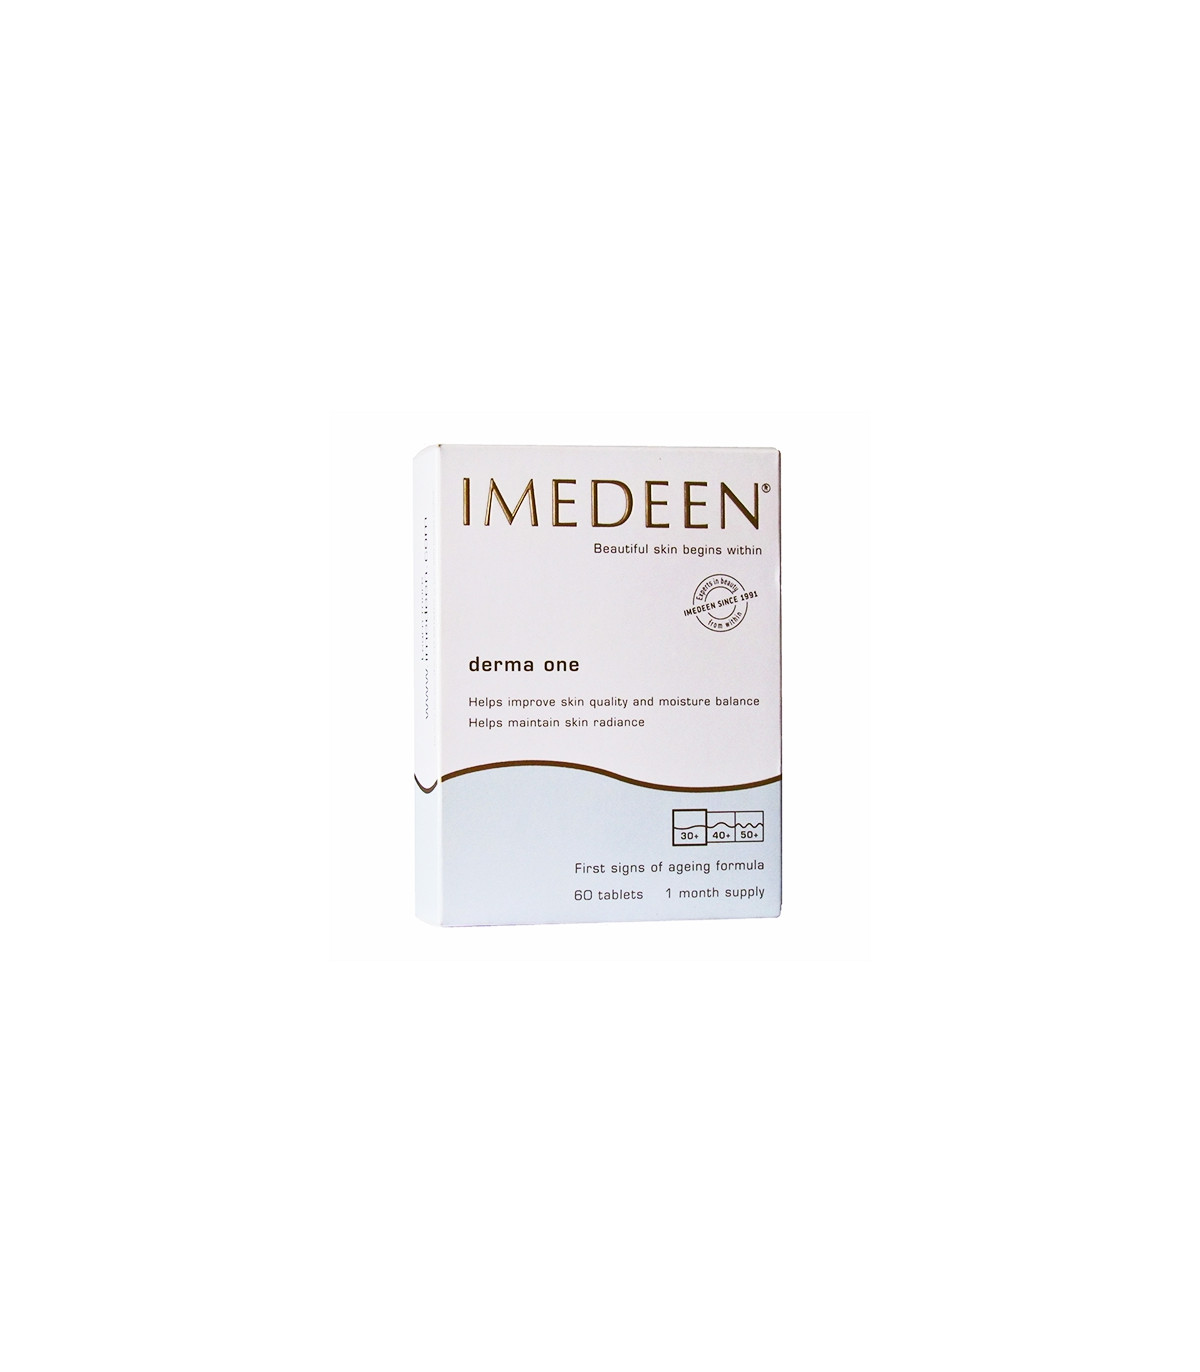 IMEDEEN Derma One – 60 Tablets